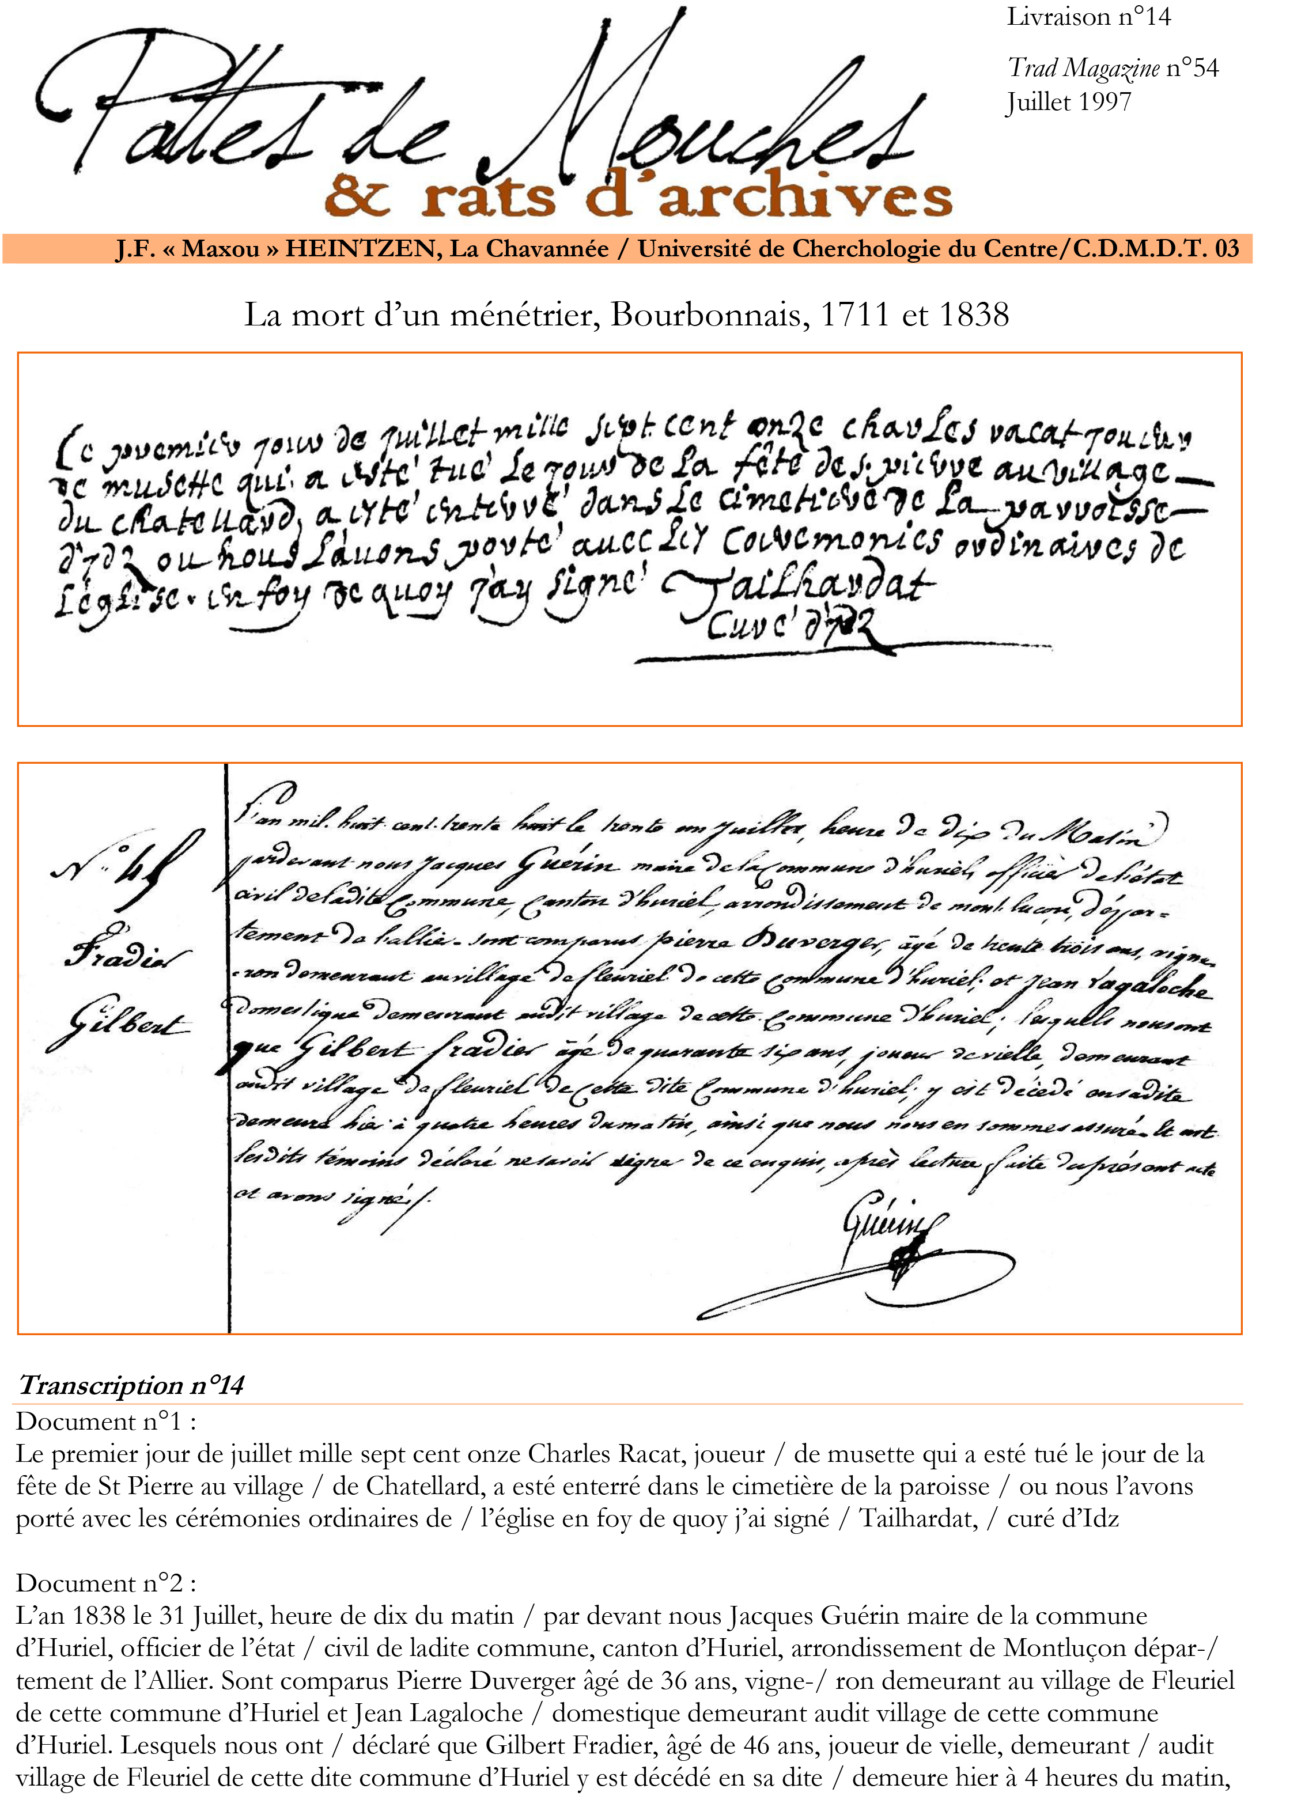 PDM14 – La mort d’un ménétrier, Bourbonnais, 1711 et 1838